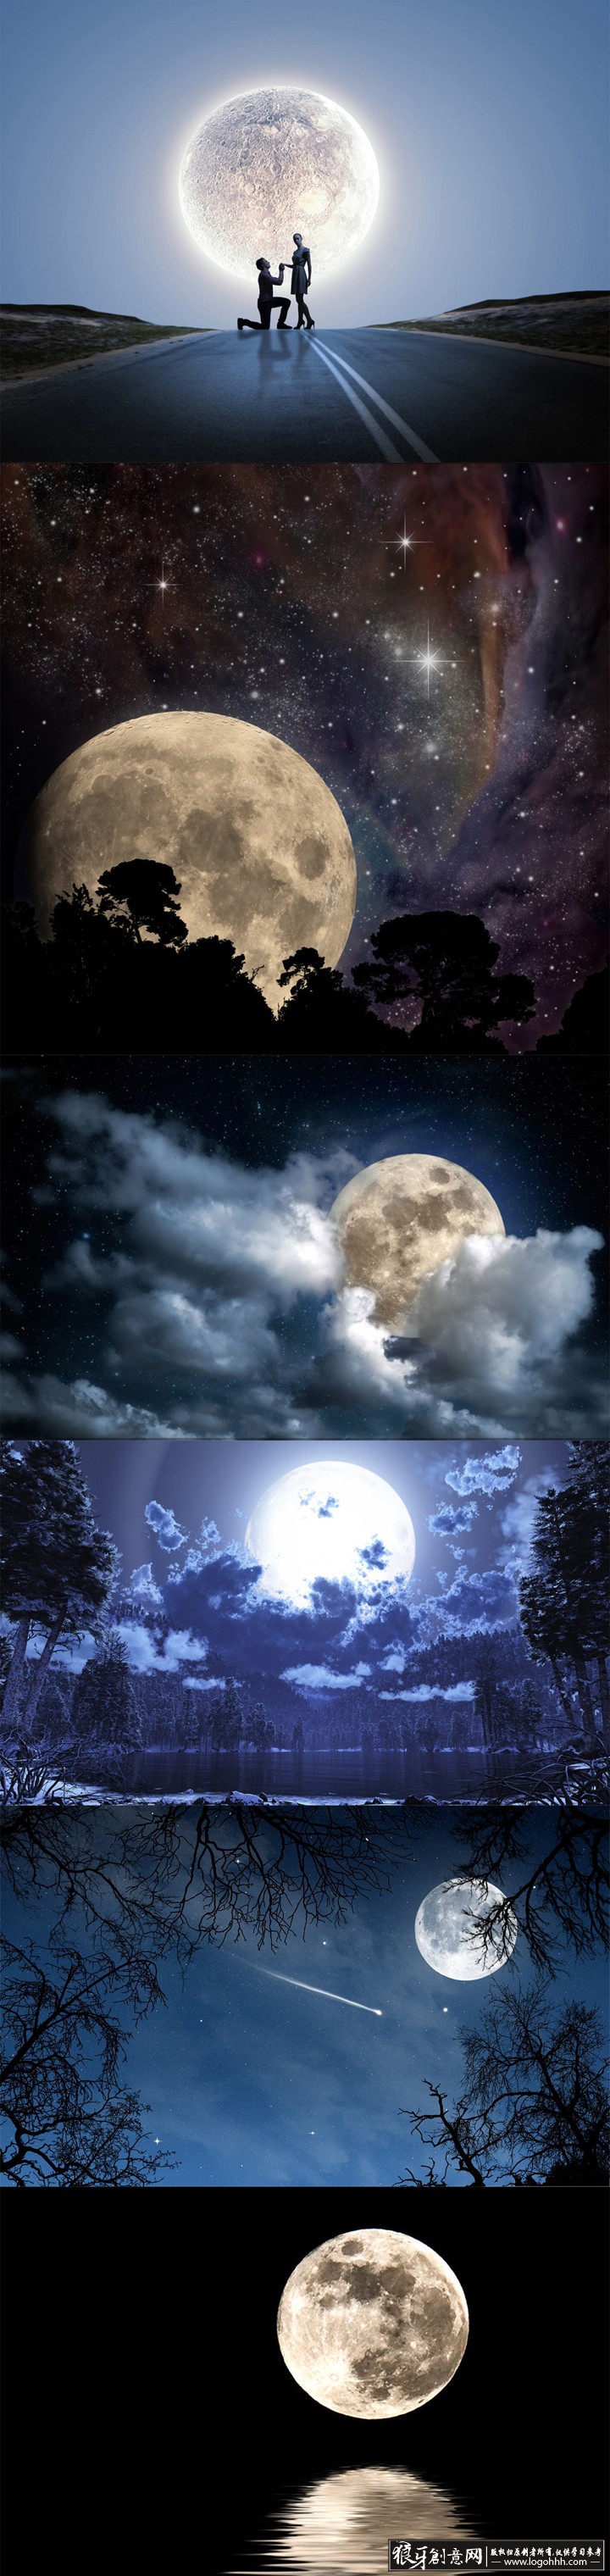 唯美星空夜色高清背景 圆月亮夜空夜晚 宇宙太空月光月球 梦幻背景